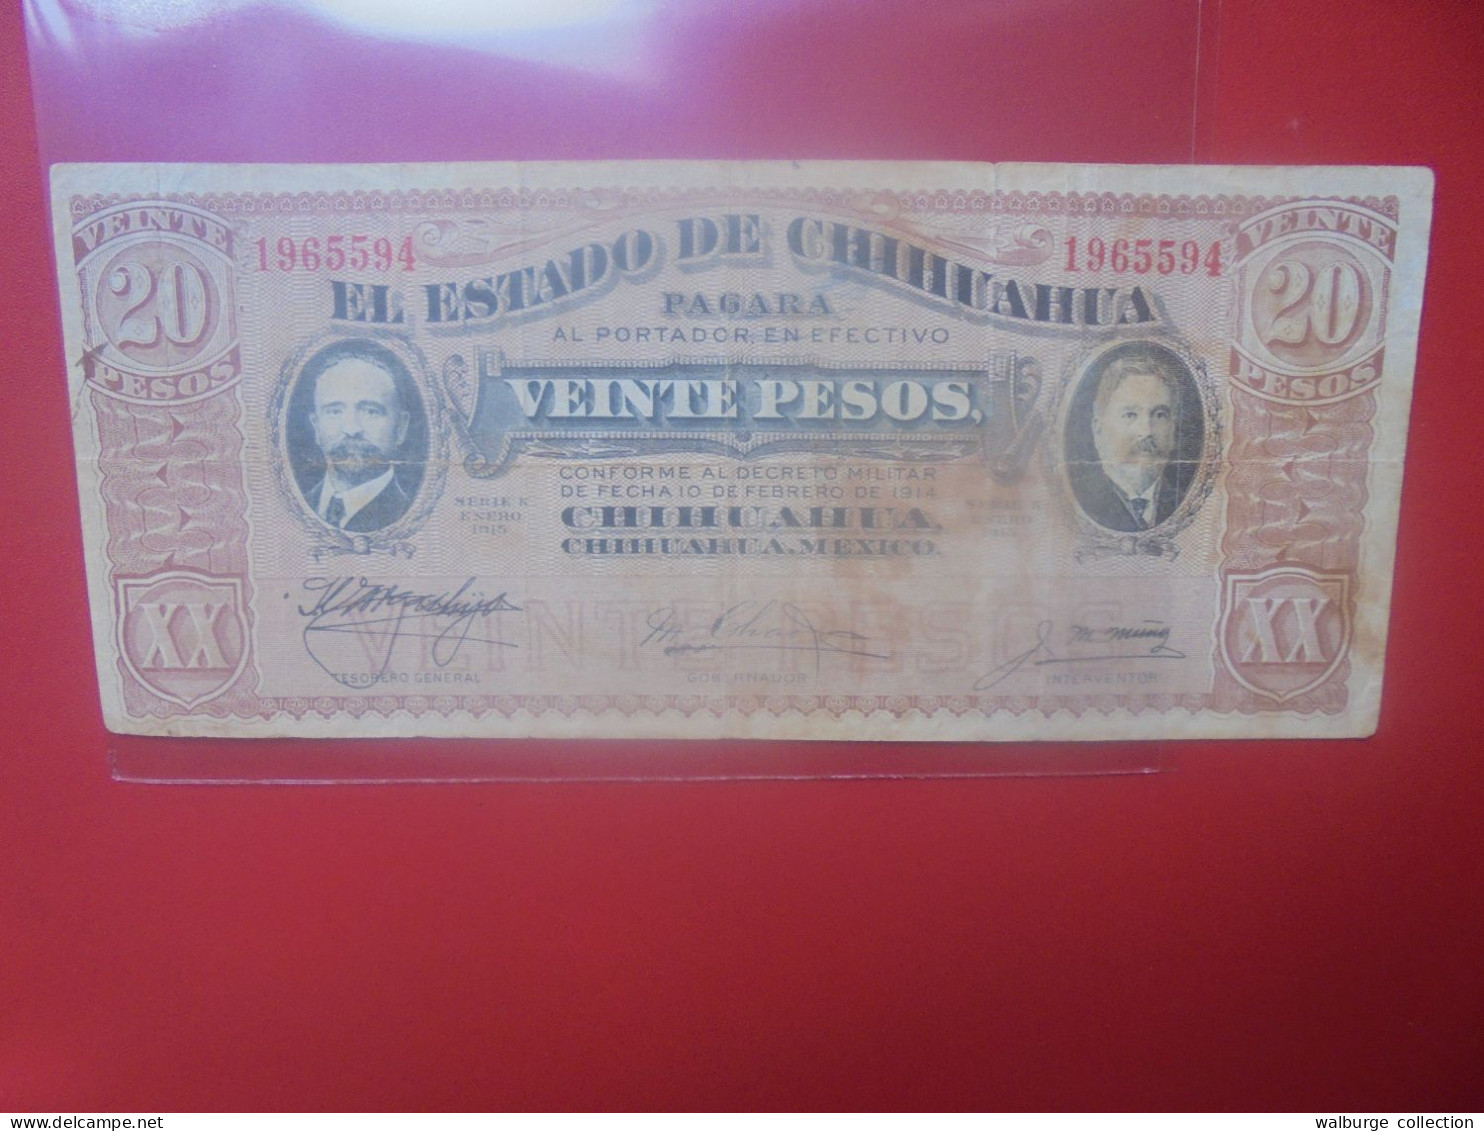 CHIHIUAHUA (MEXIQUE) 20 PESOS 1914/15 (cachet Au Revers) Circuler (B.33) - México